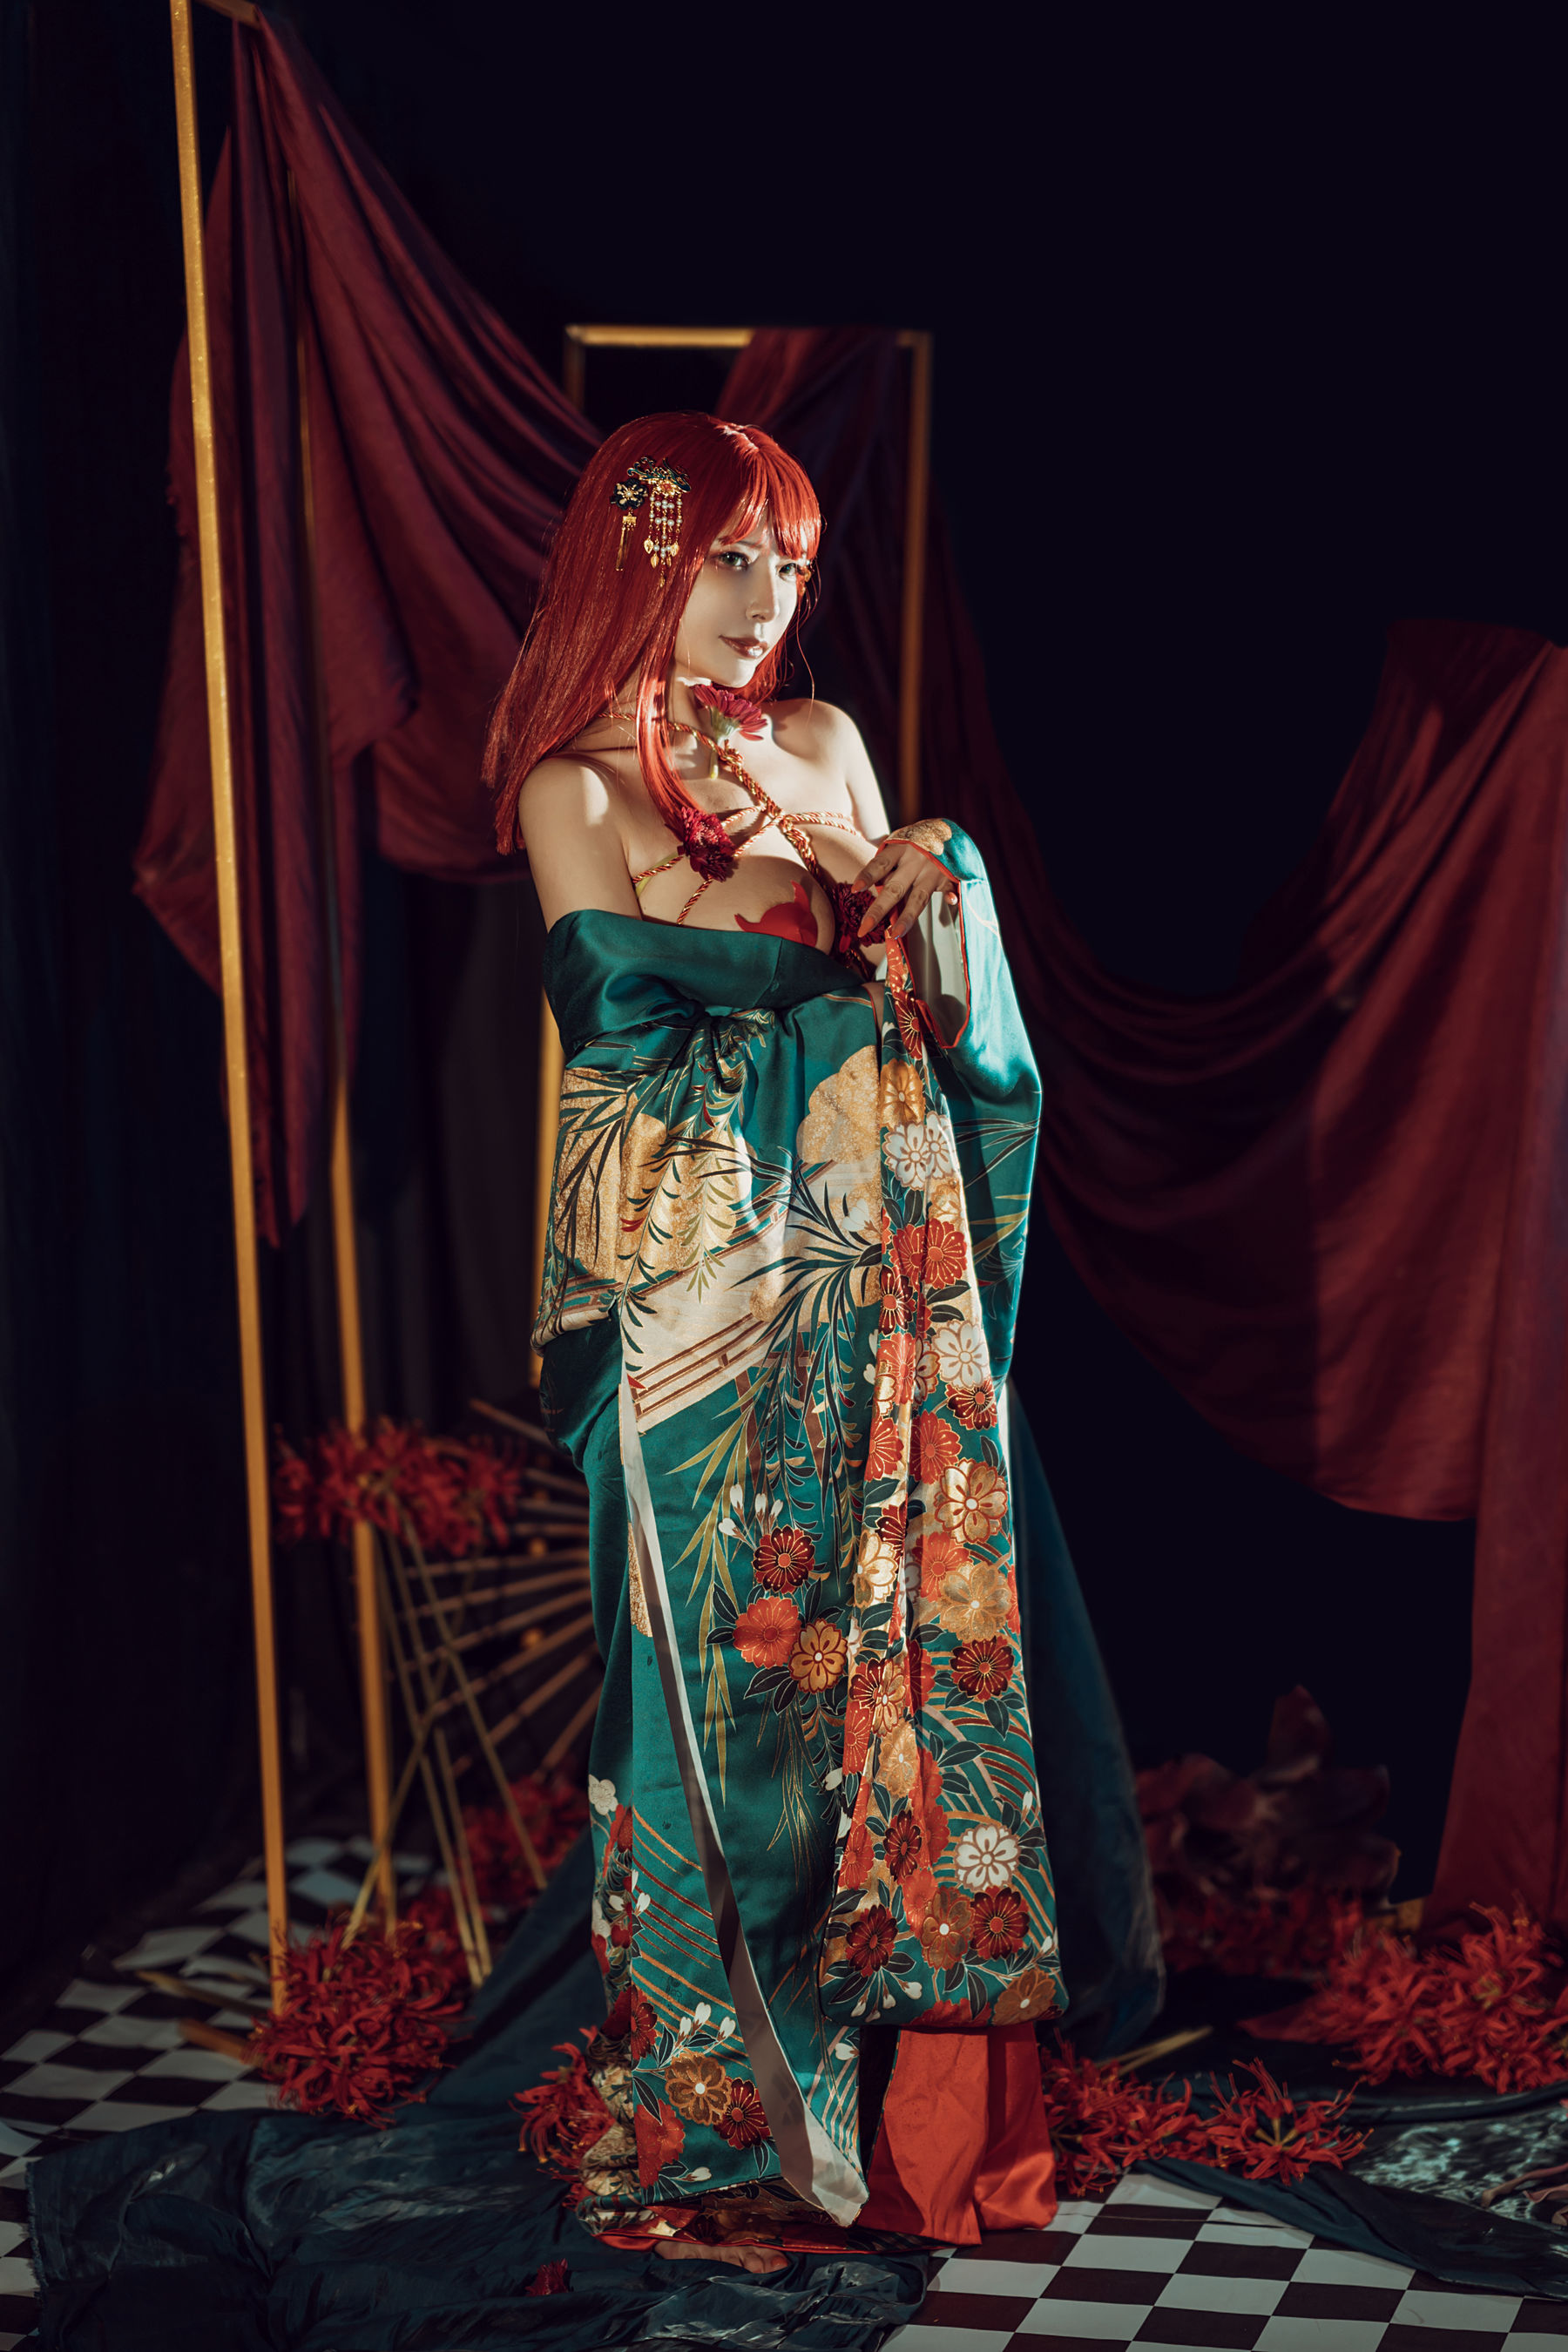 [Net Red COSER Photo] Autunno e Corgi (Xia Xiaoqiu Qiuqiu) - Kimono Pagina 31 No.c5a52c